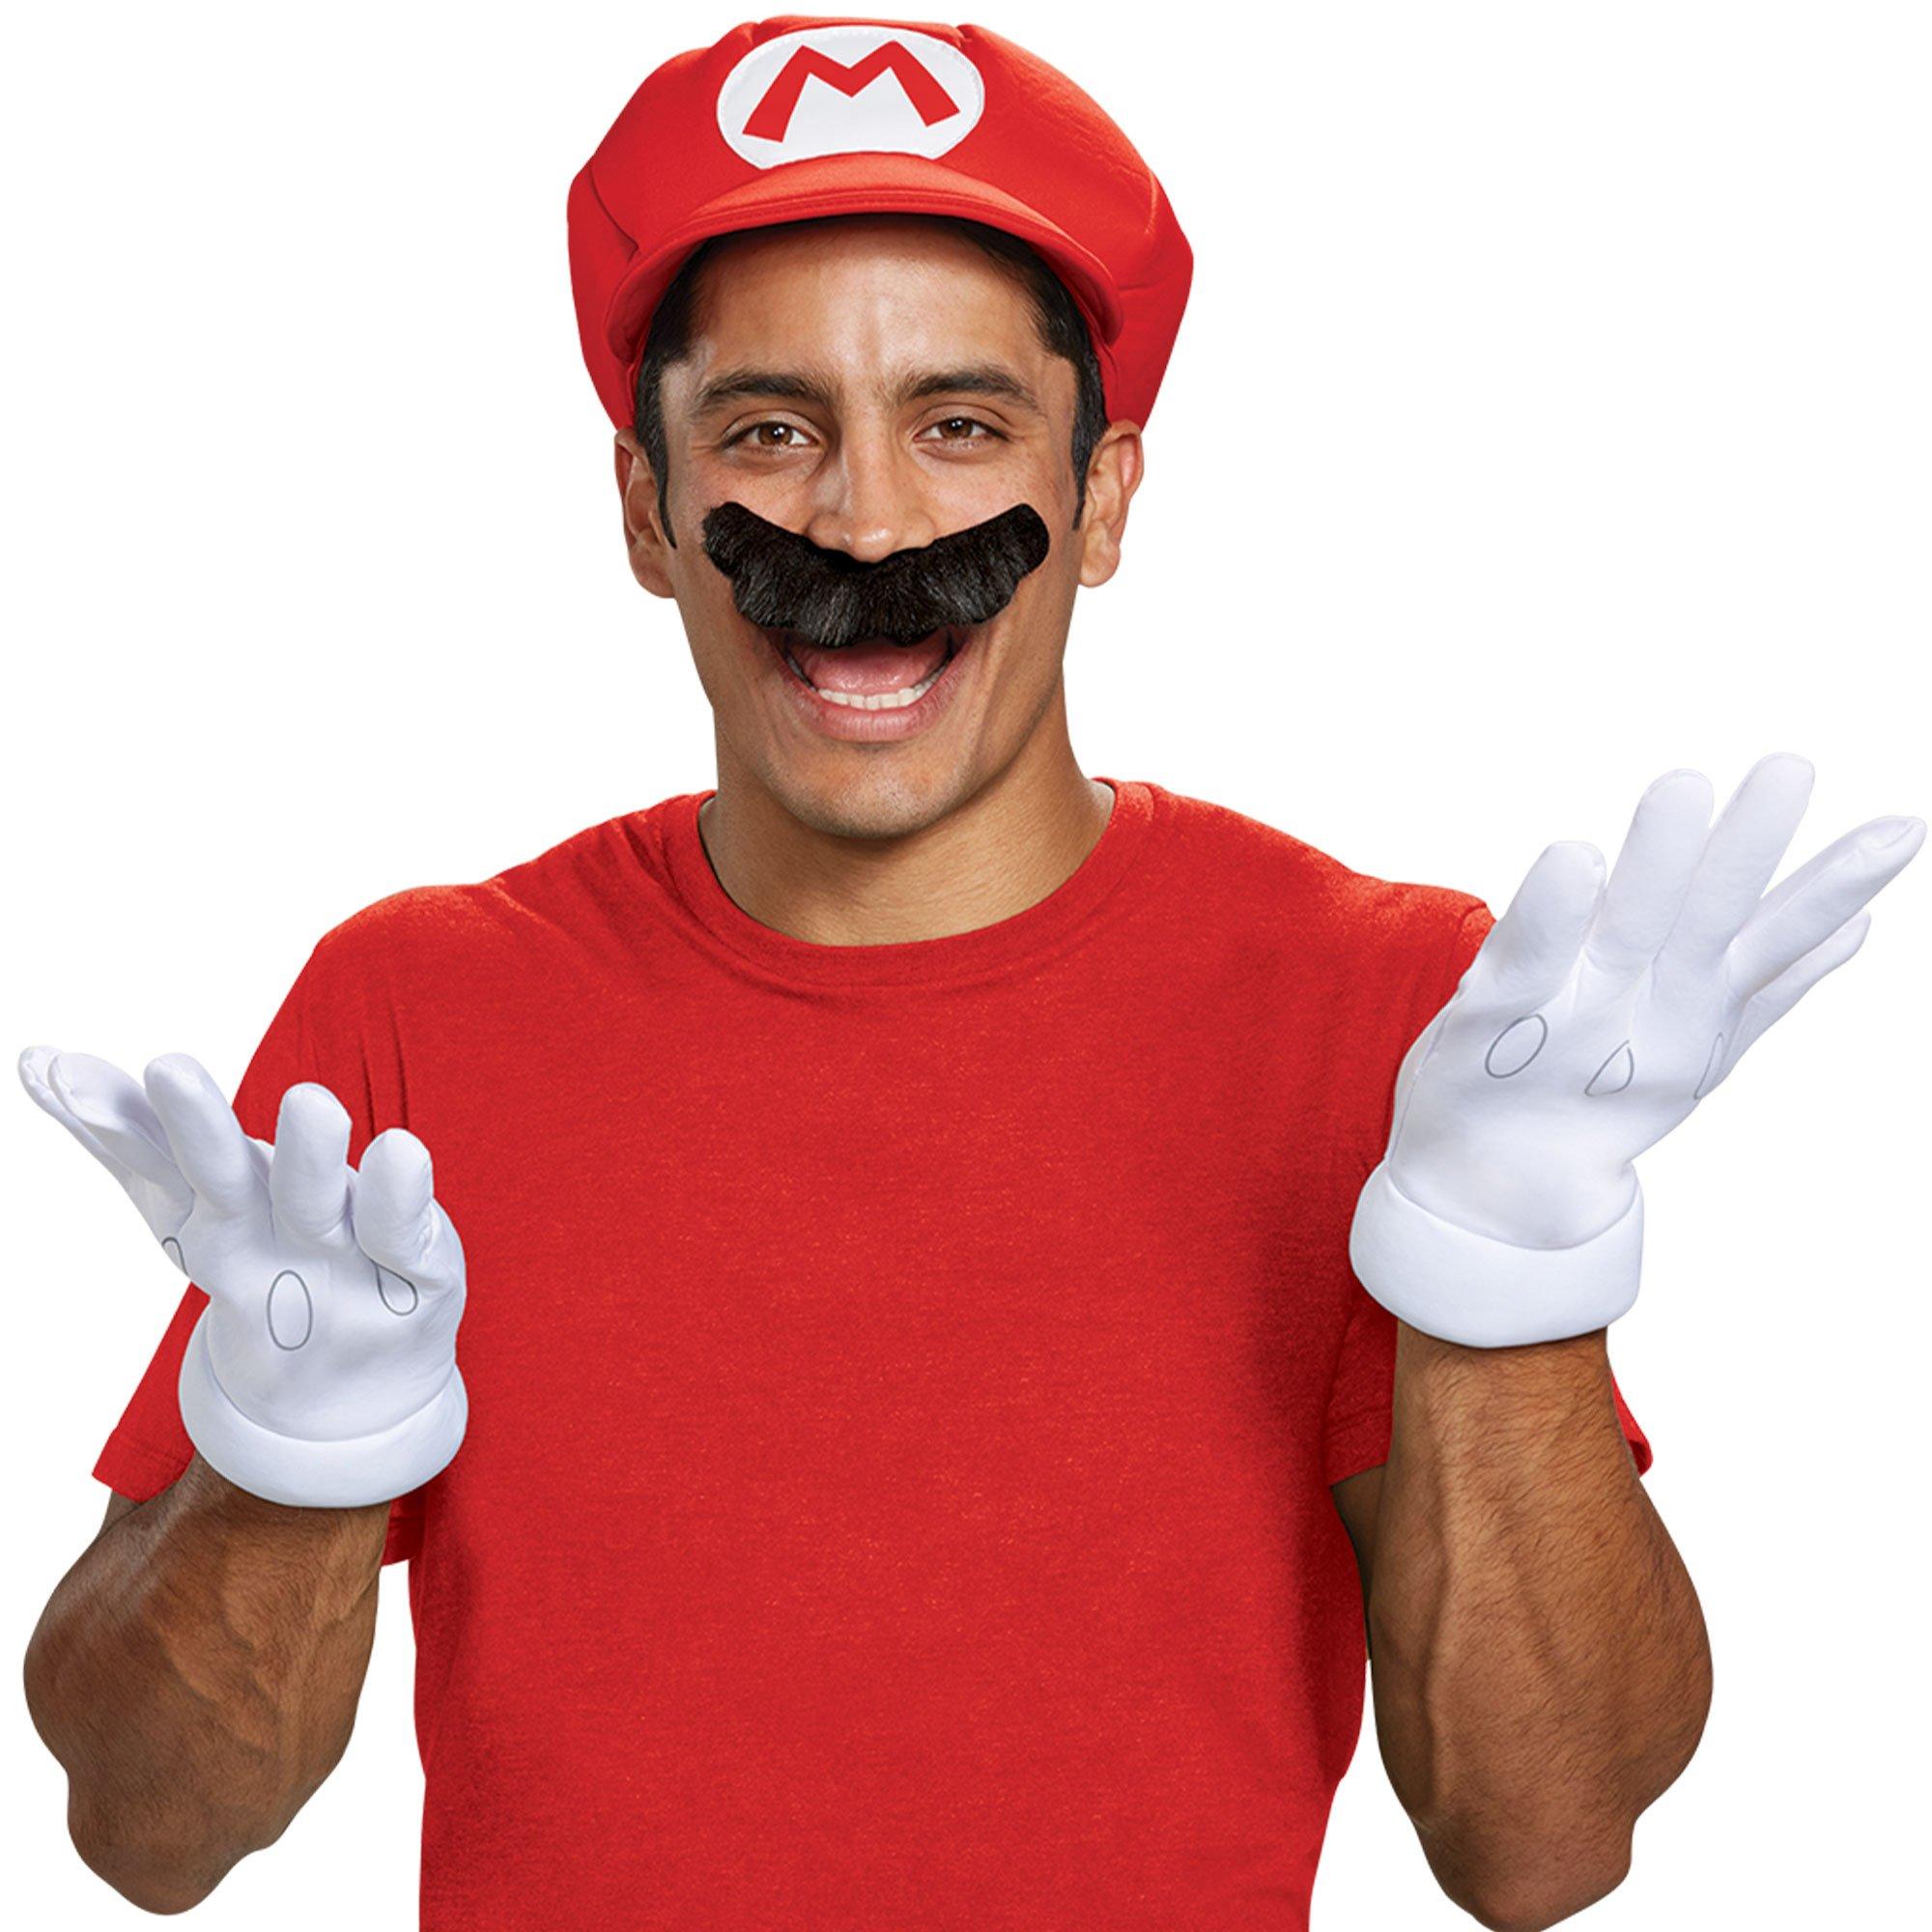 Adult Mario Costume Accessory Kit - Nintendo Super Mario Bros.